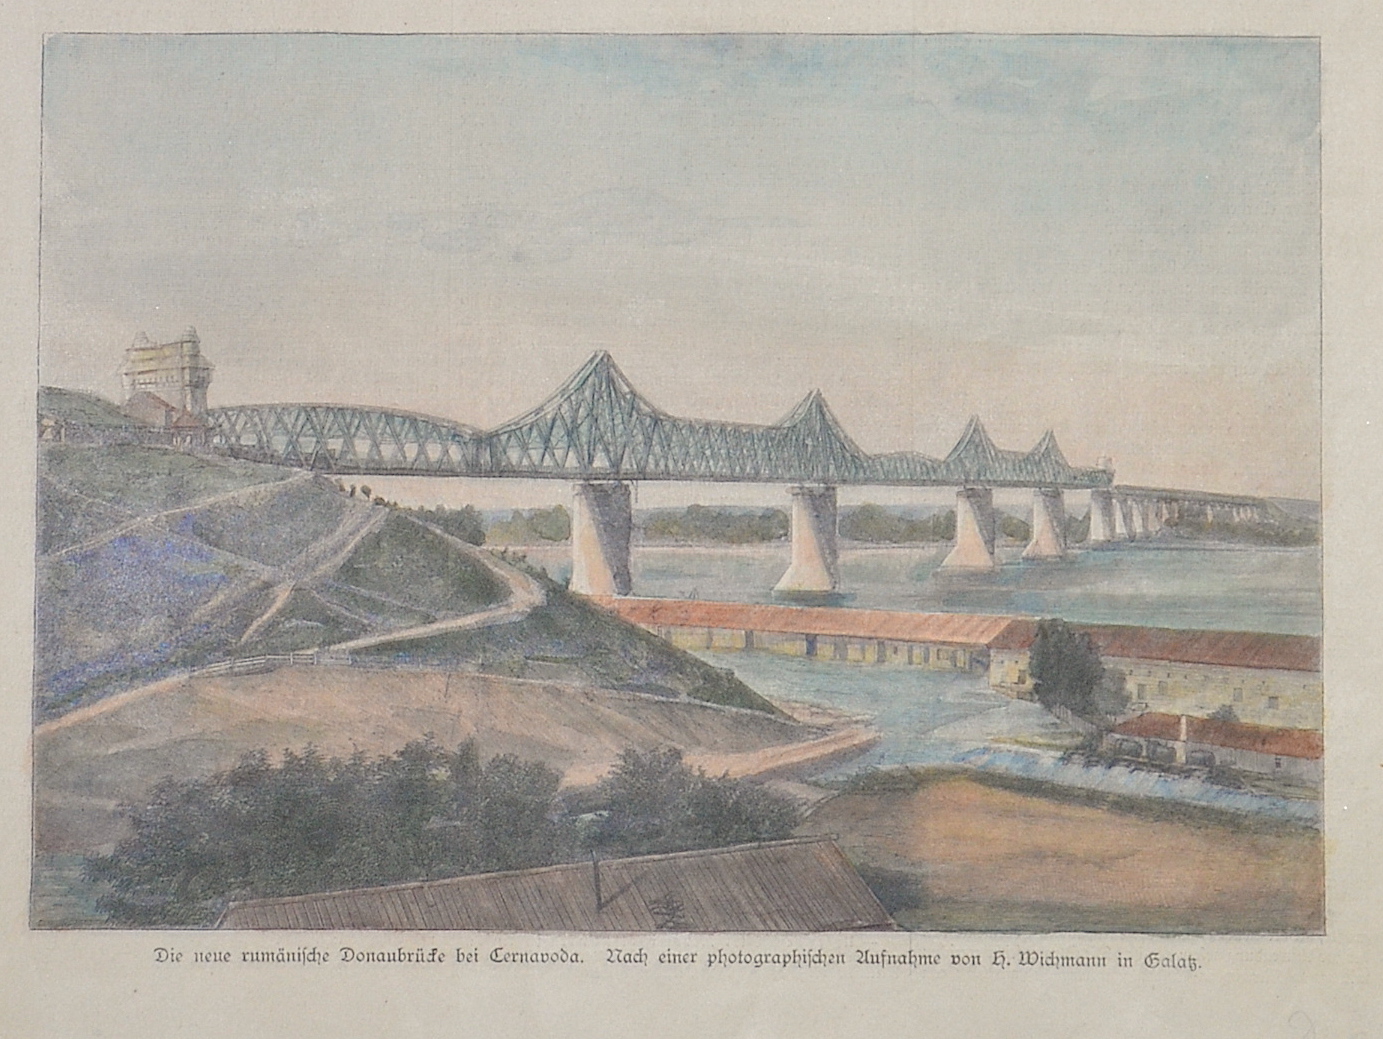 Anonymus  Die neue rumänische Donaubrücke bei Cernavoda. Nach einer photographischen Aufnahme von H. Wichmann in Galatz.